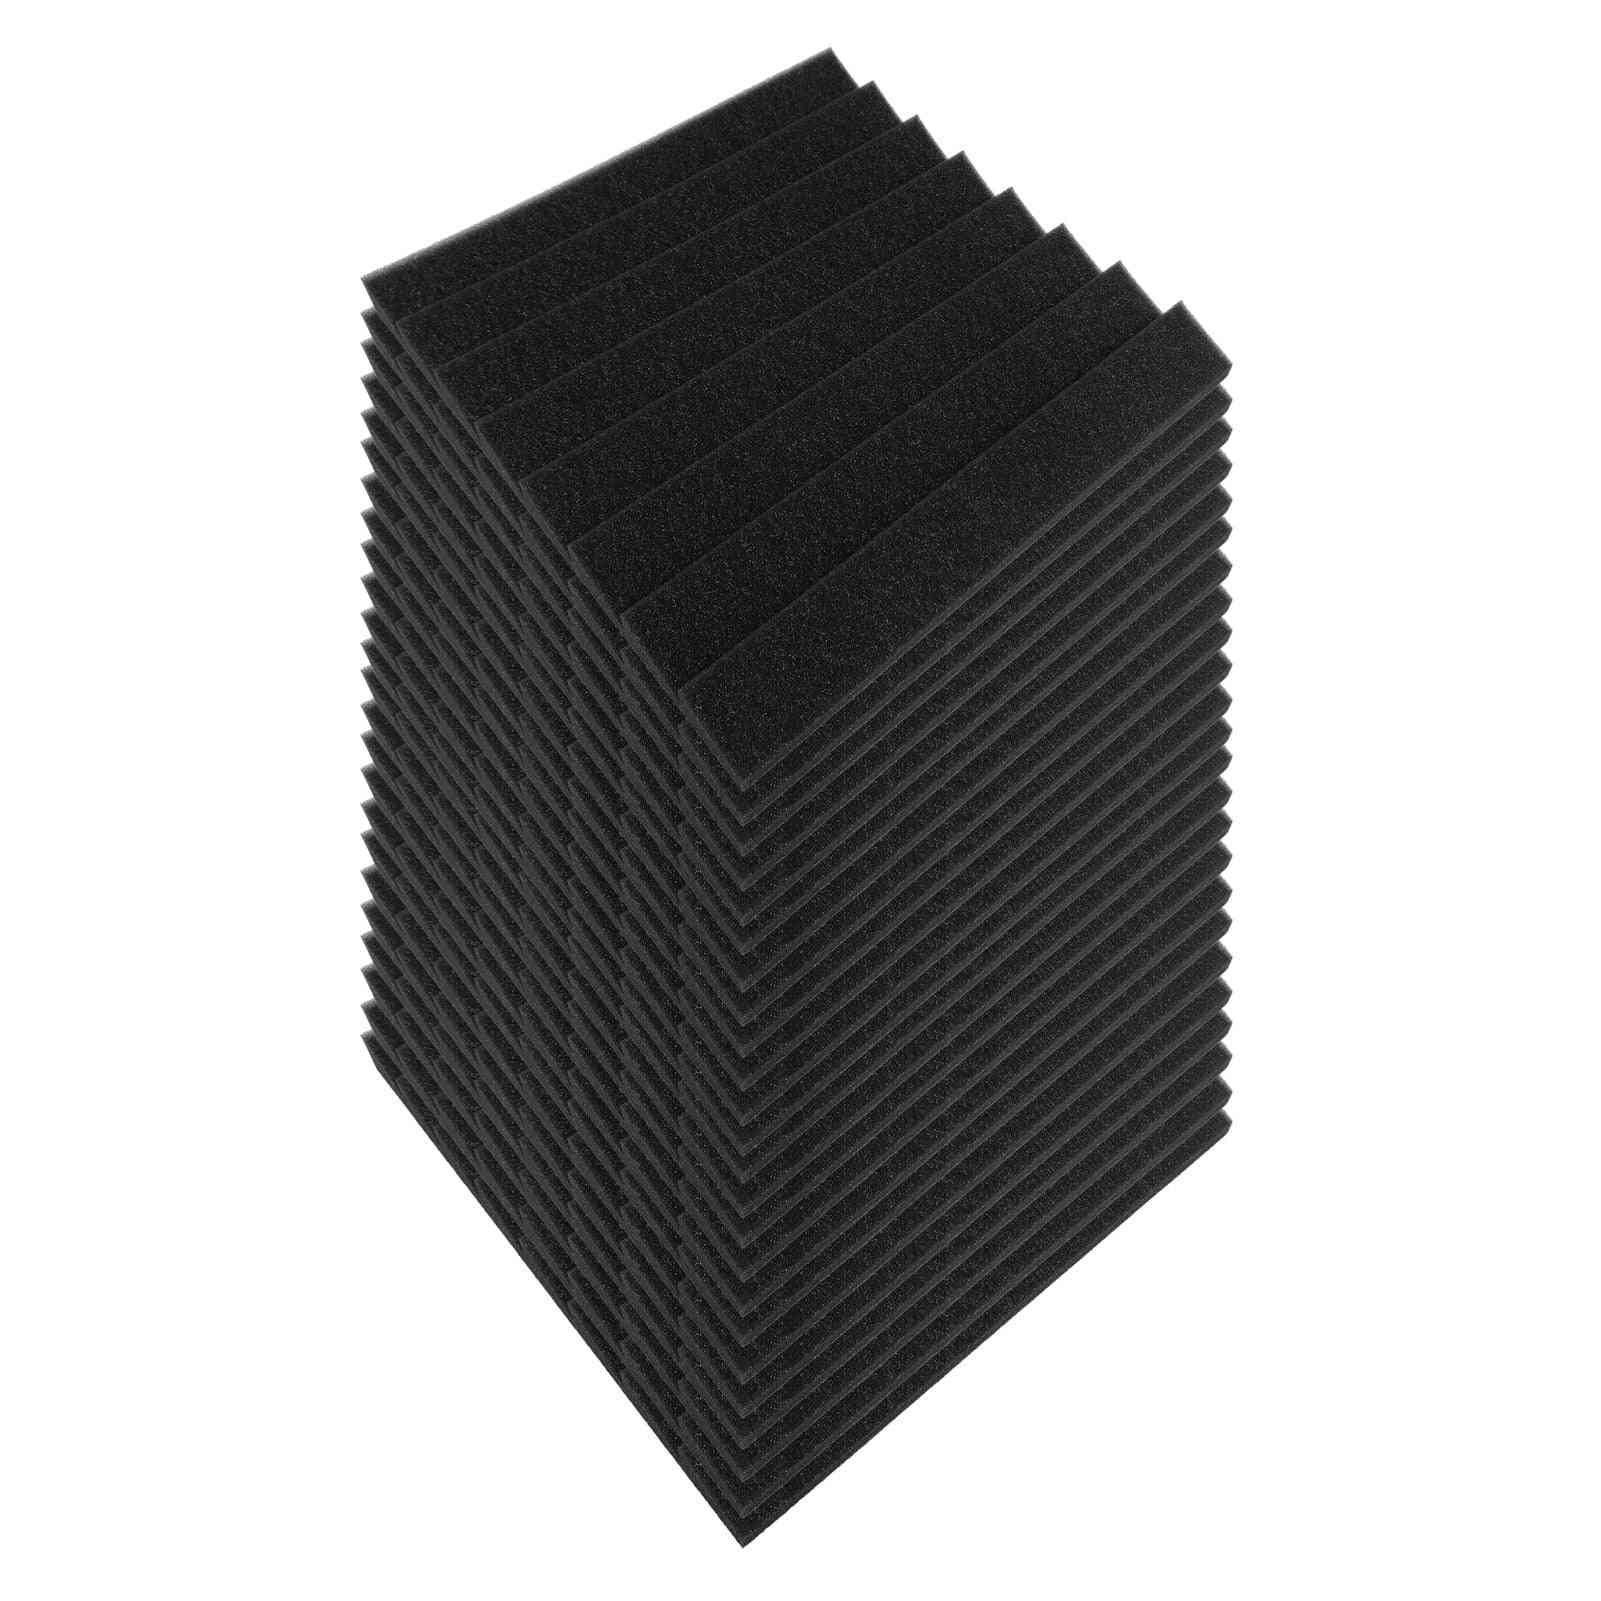 Studio Acoustic Foams Panels Insulation Soundproof Absorbing Foam Wall